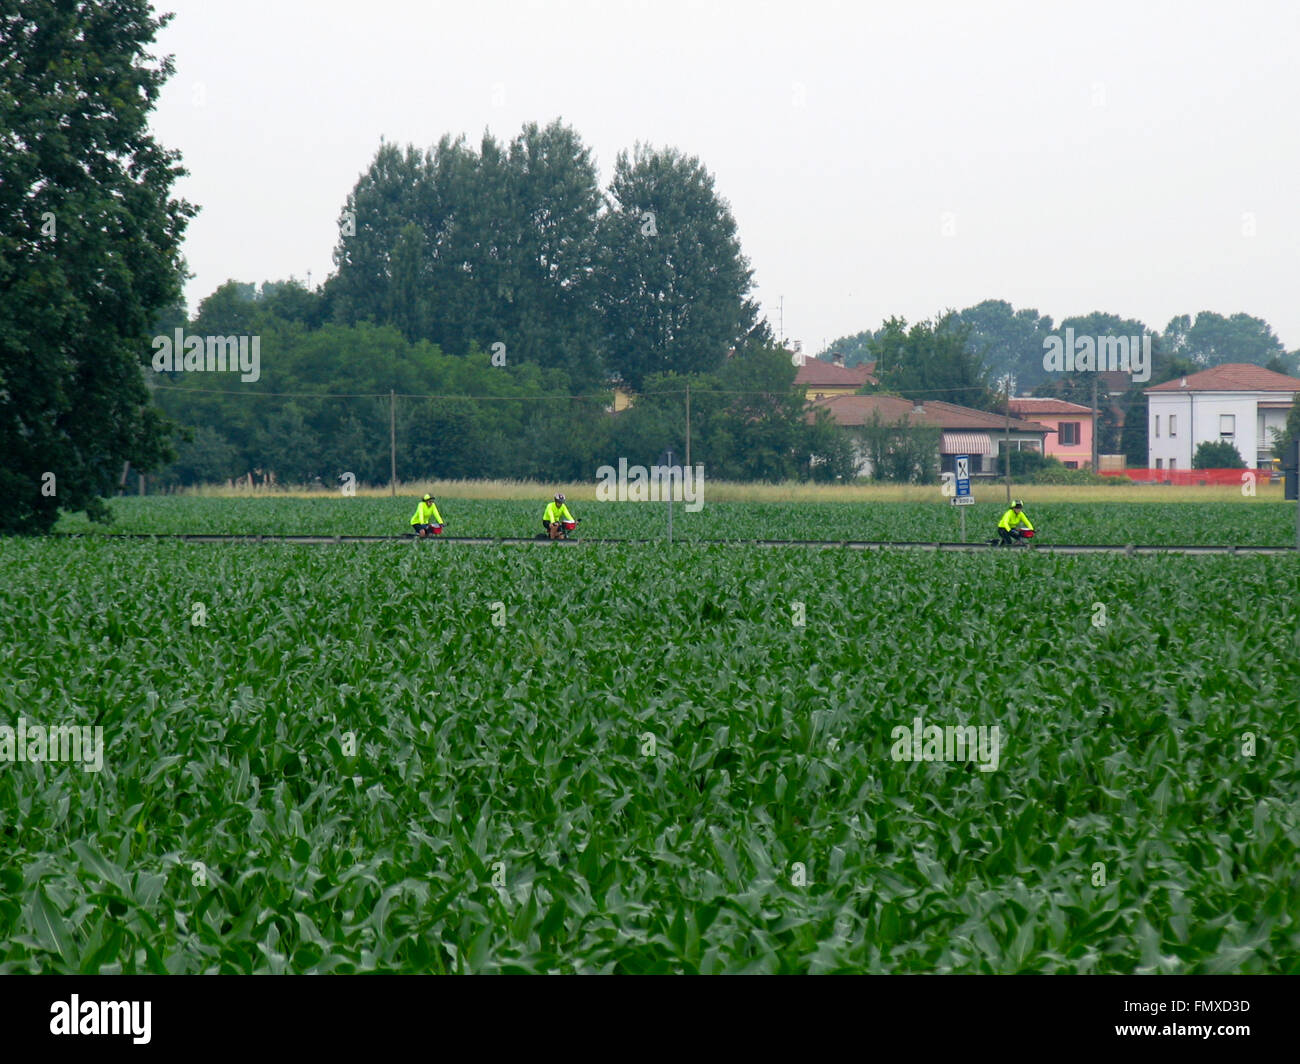 Trois des cyclotouristes équitation entre champs de maïs dans la région de Lombardie, Italie du nord. Banque D'Images